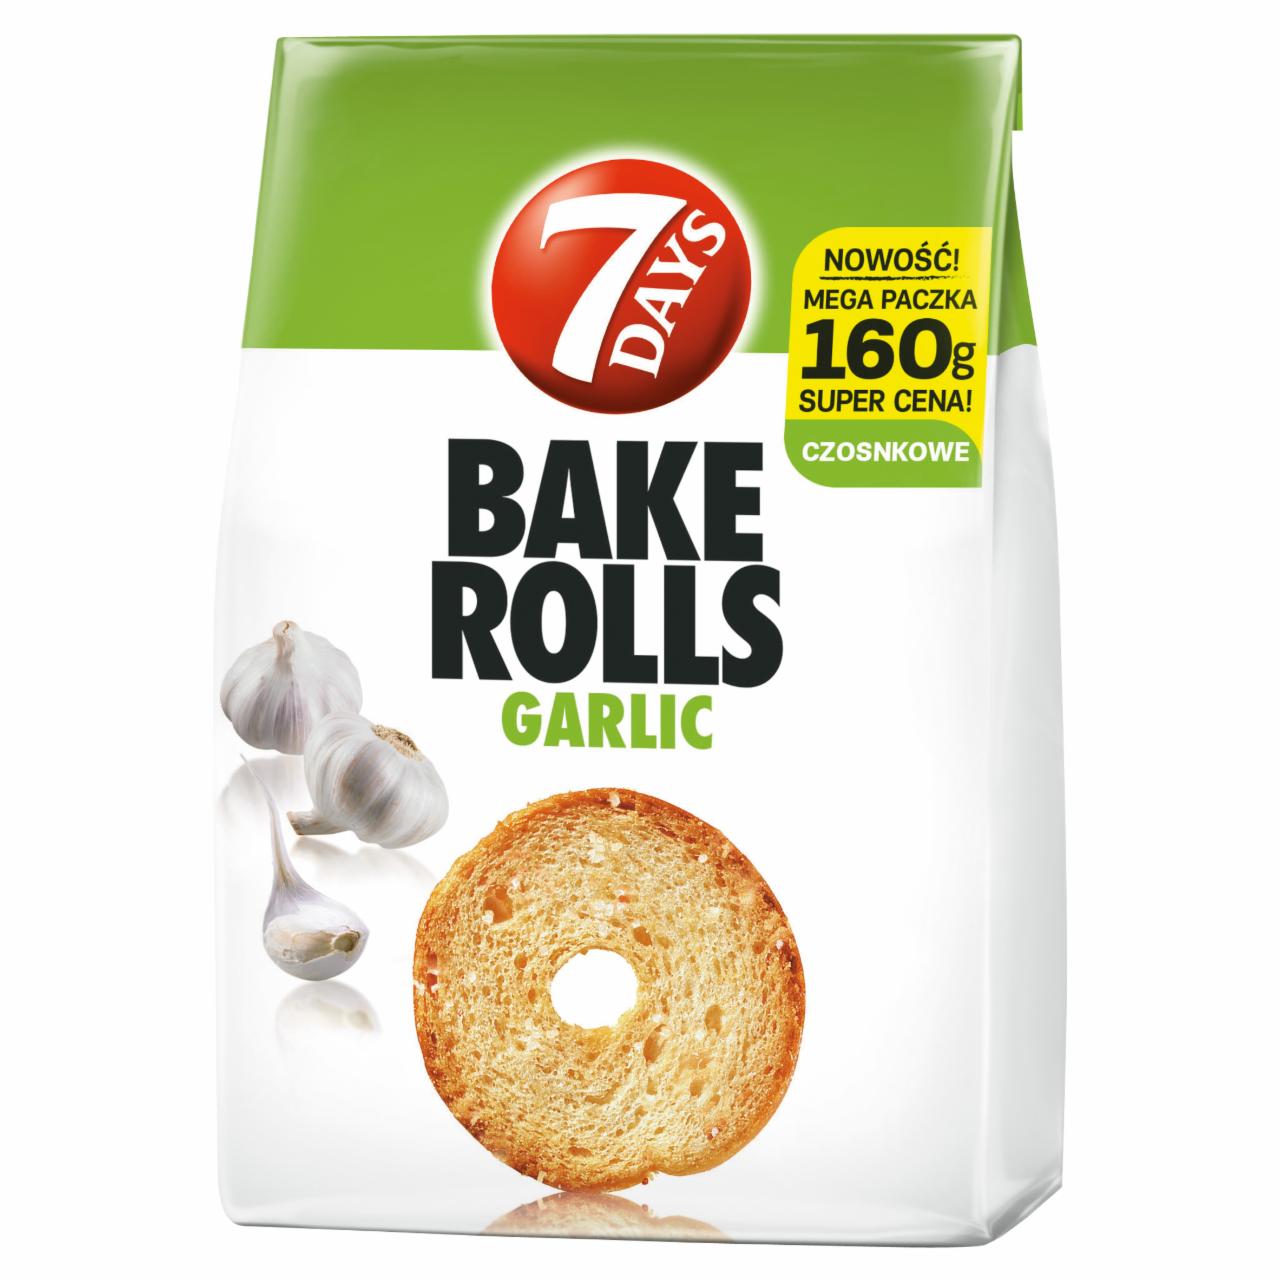 Zdjęcia - Bake Rolls Chrupki chlebowe z otrębami pszennymi i czosnkiem 160 g 7 Days